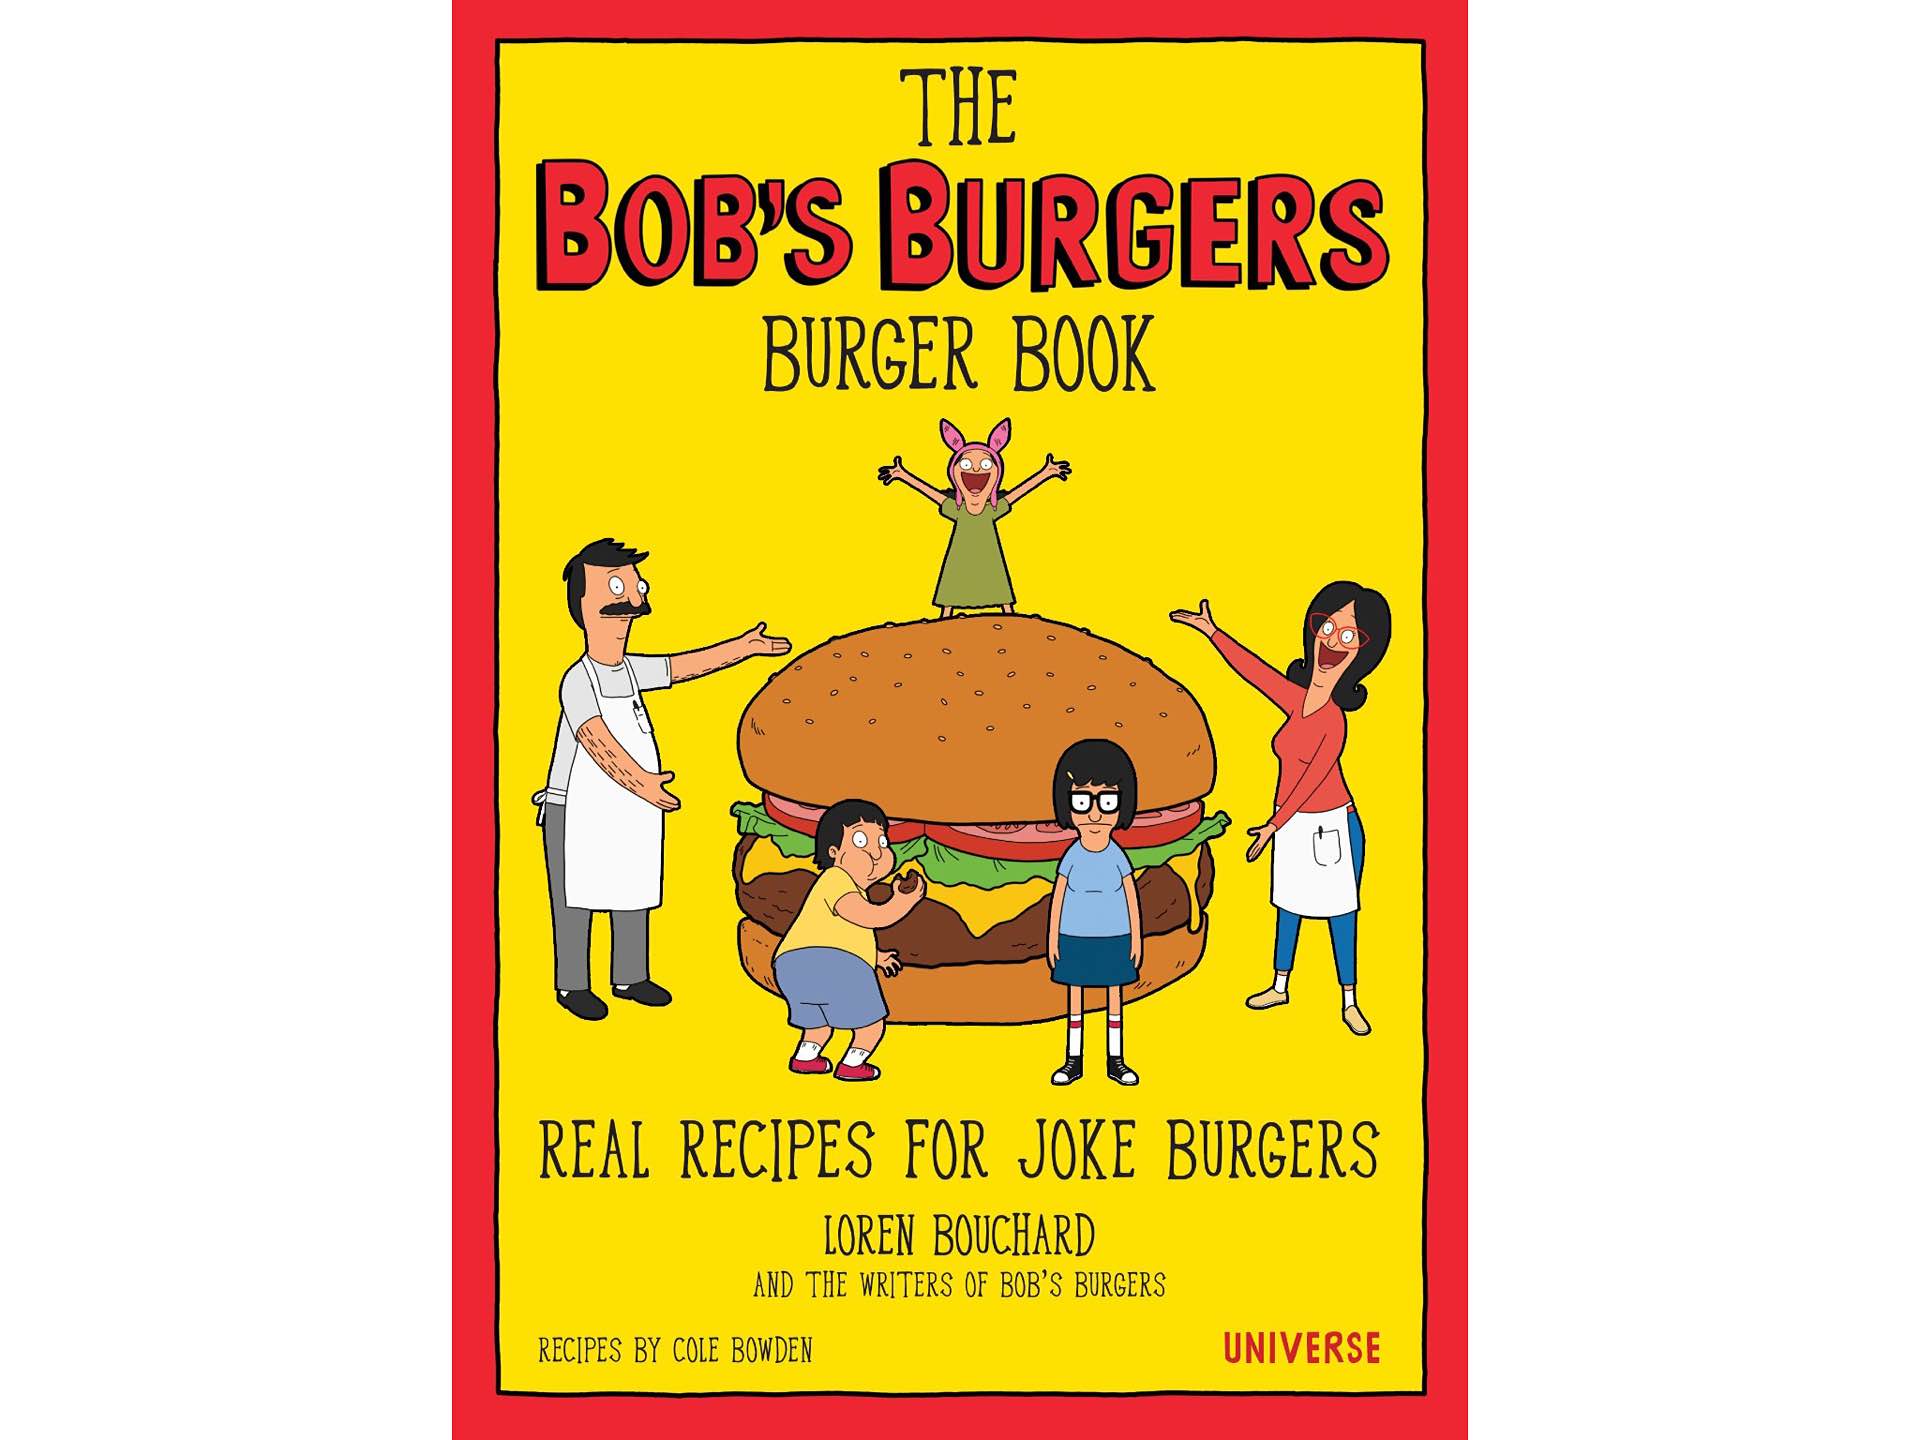 The Bob S Burgers Burger Book - Bob's Burgers Burger Book Real Recipes - HD Wallpaper 